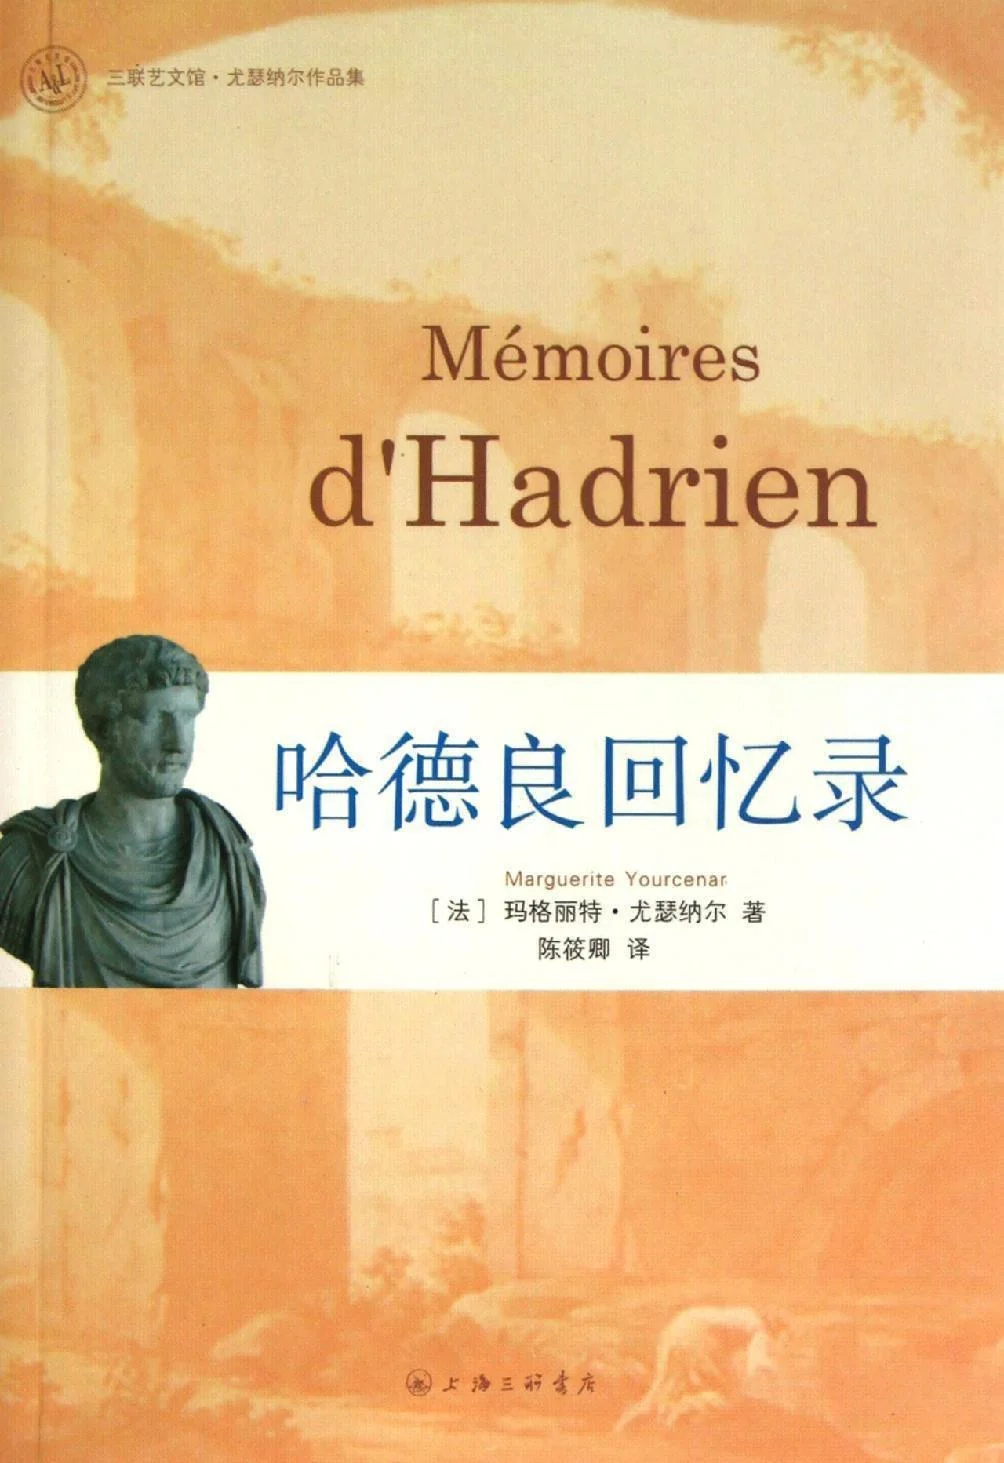 《哈德良回忆录》，作者玛格丽特·尤瑟纳尔，讲述罗马“五贤君”之一哈德良一生的故事，实际亦体现20世纪中期法国文学界对2世纪罗马的态度